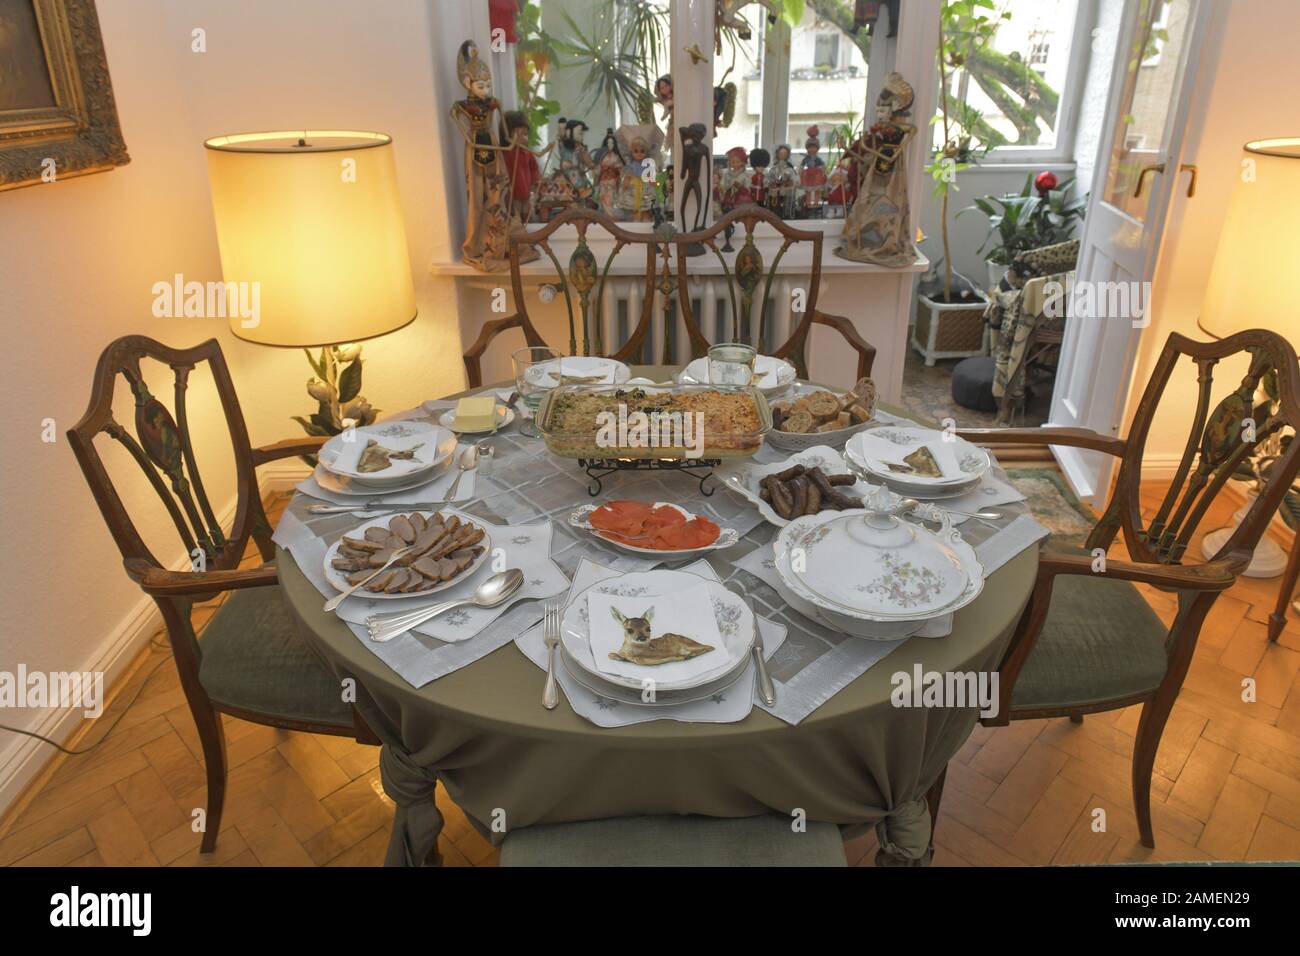 Gedeckter Tisch mit Essen, Auflauf, Tischdecke, Teller, Porzellan Stock Photo